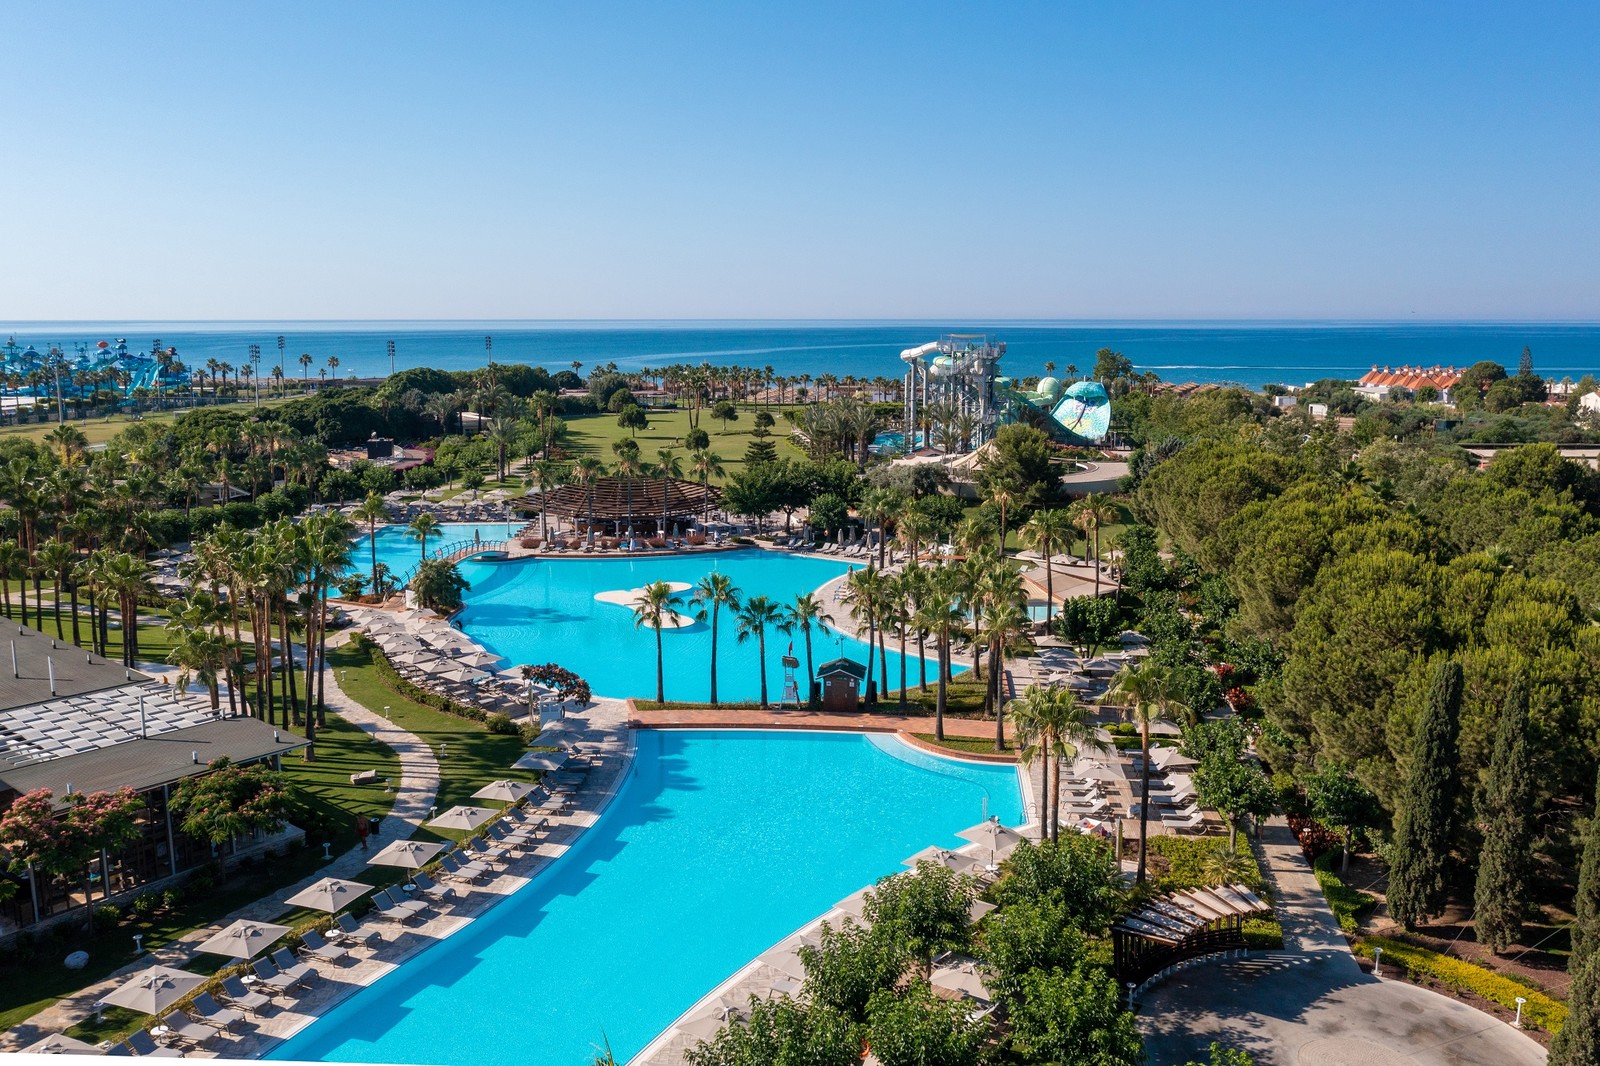 فندق باروت لارا من الفنادق التي تدعم الإستدامة في منطقة البحر الأبيض المتوسط